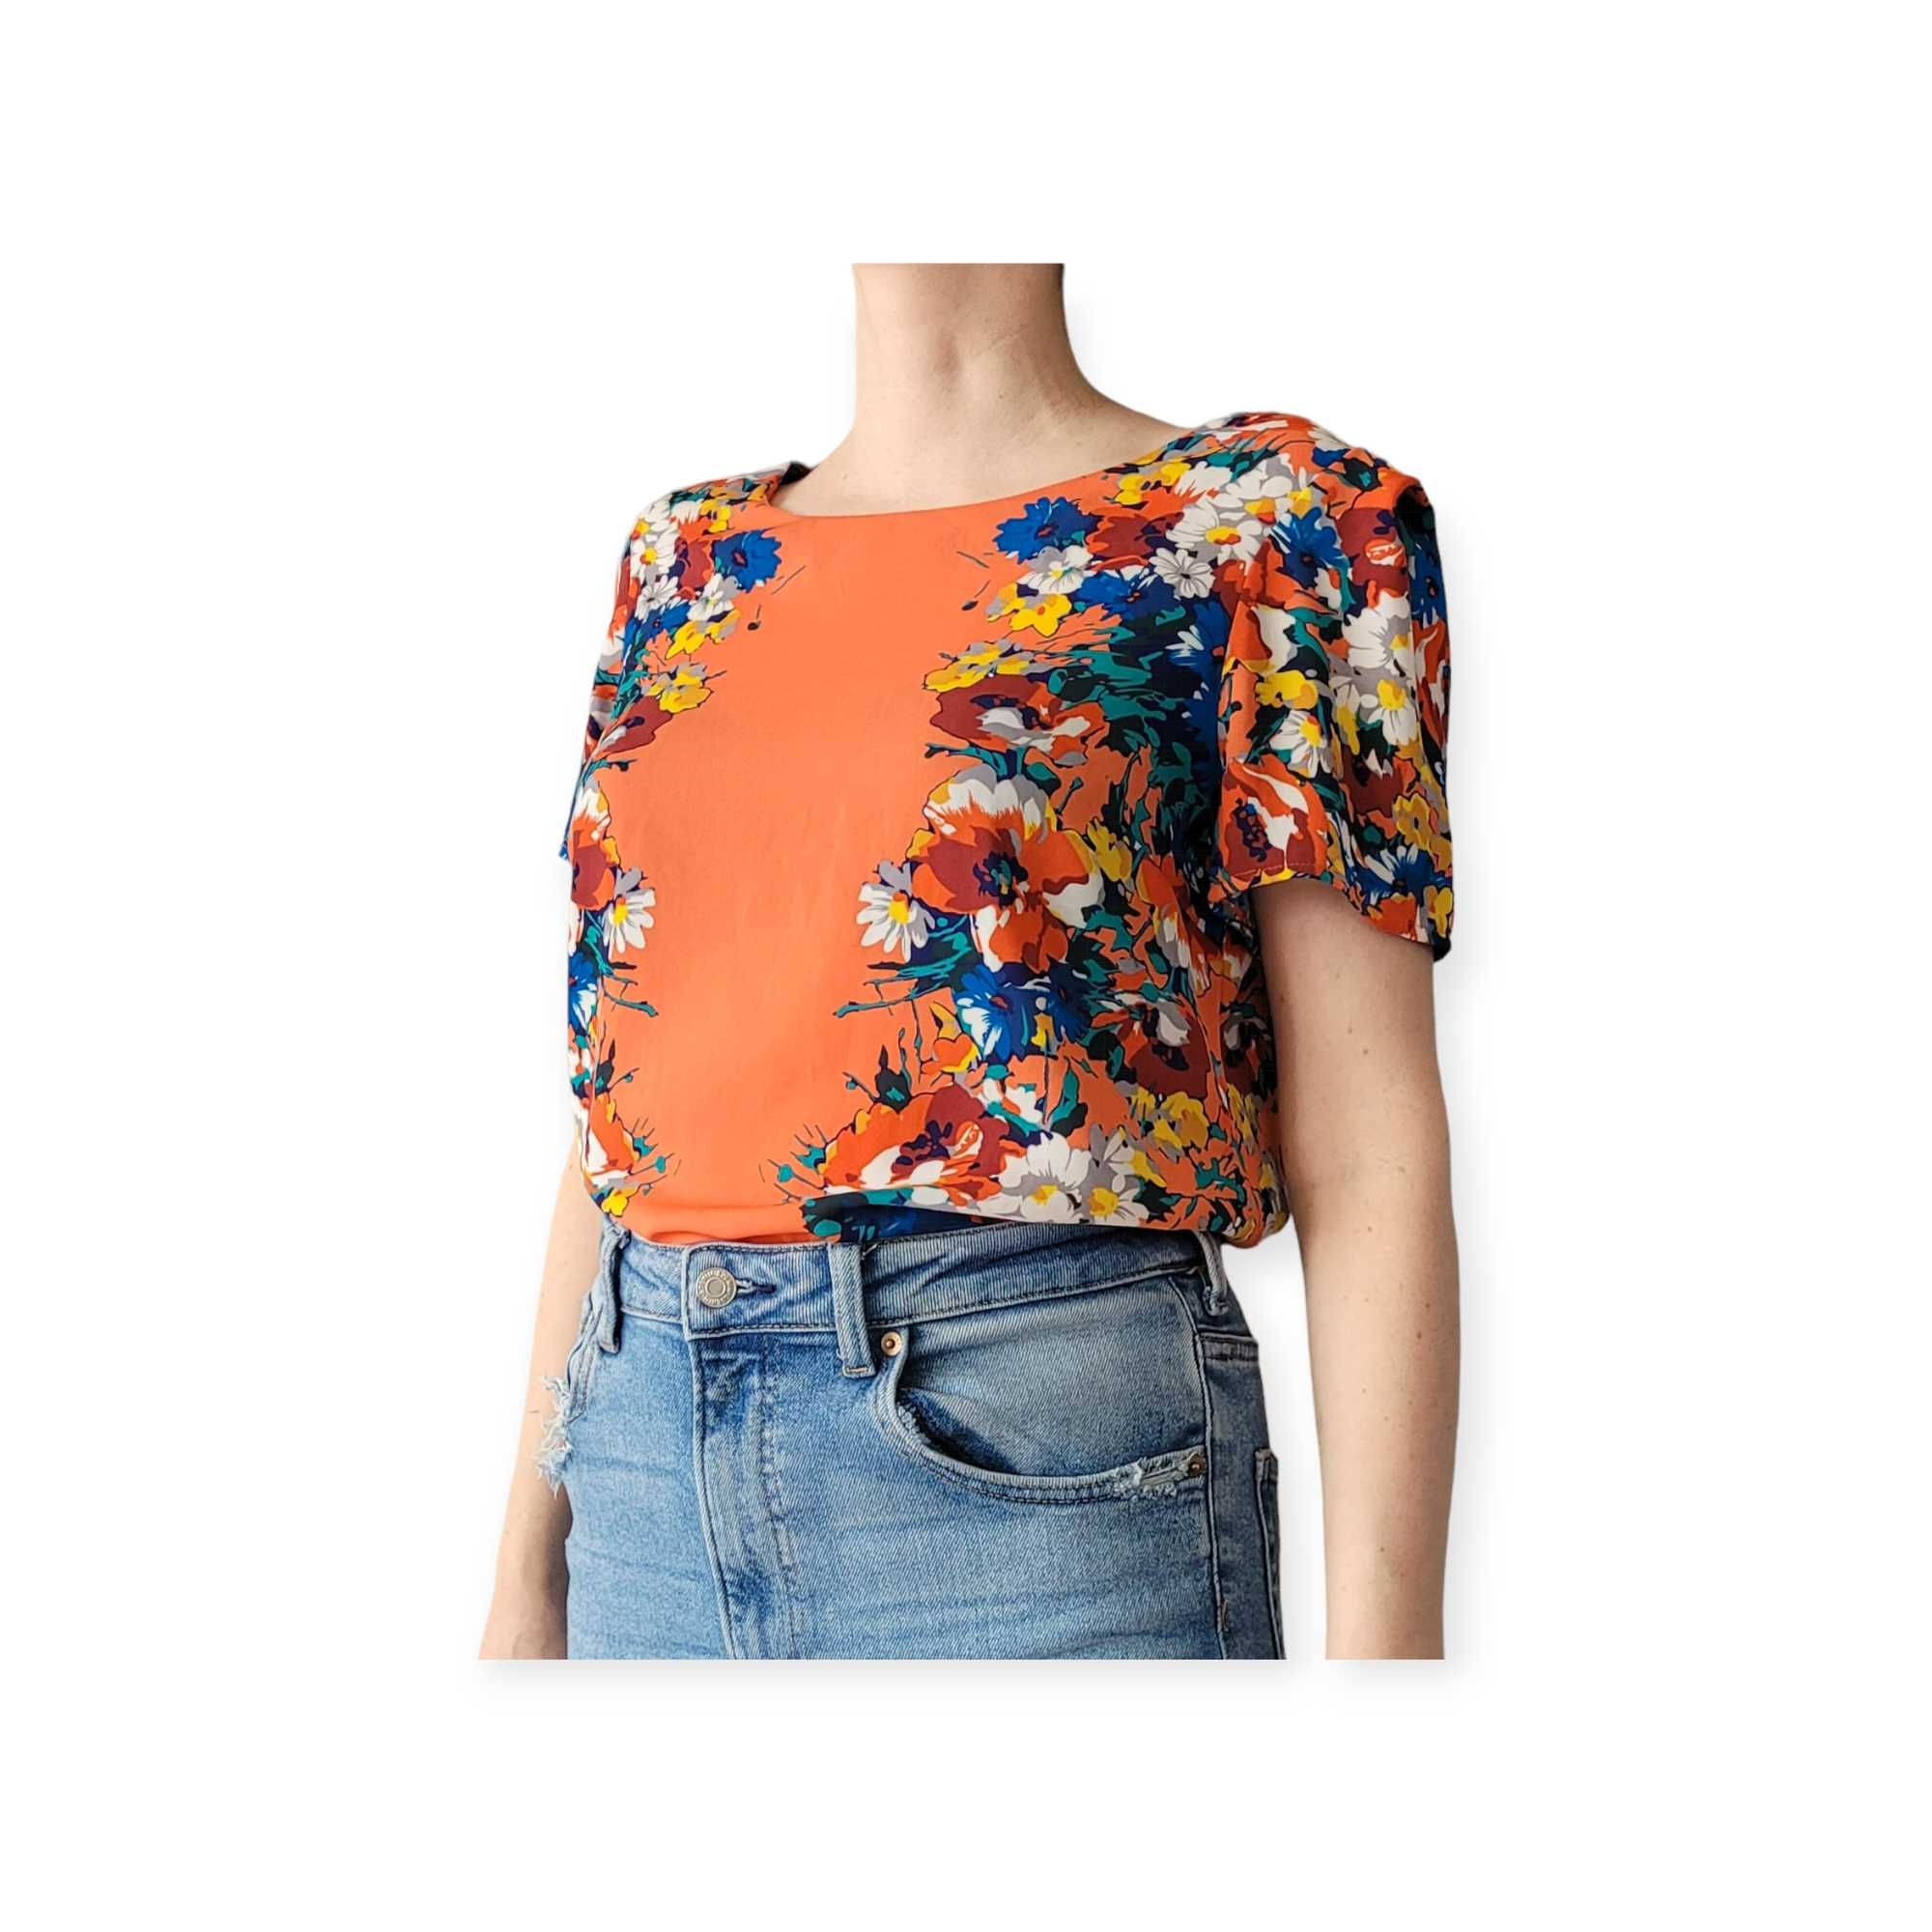 Pomarańczowa zwiewna bluzka damska M w kwiaty koszulka top boho lato